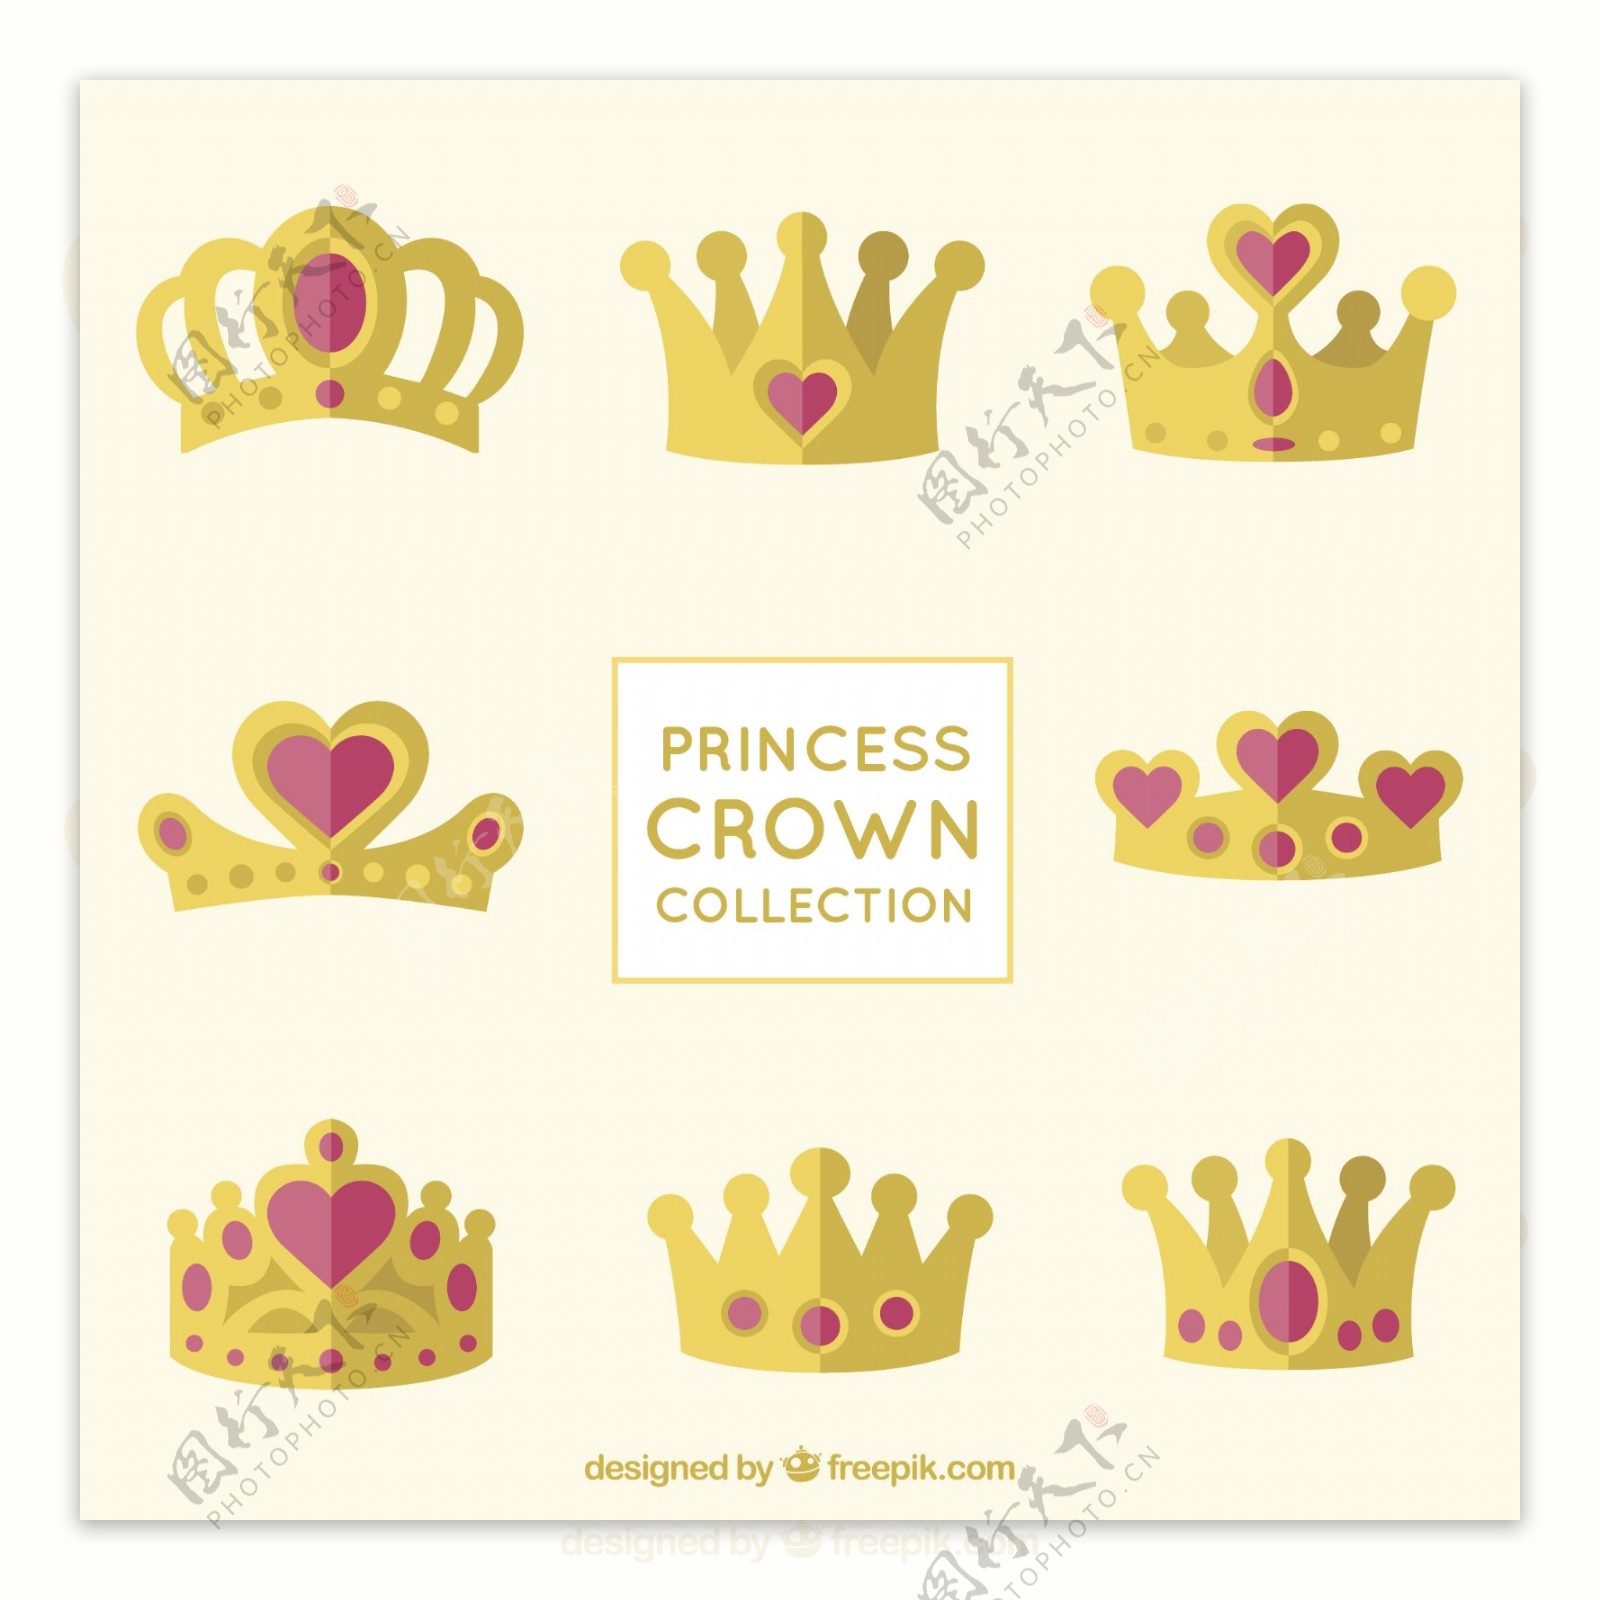 镶嵌红色心形珠宝的公主王冠矢量素材